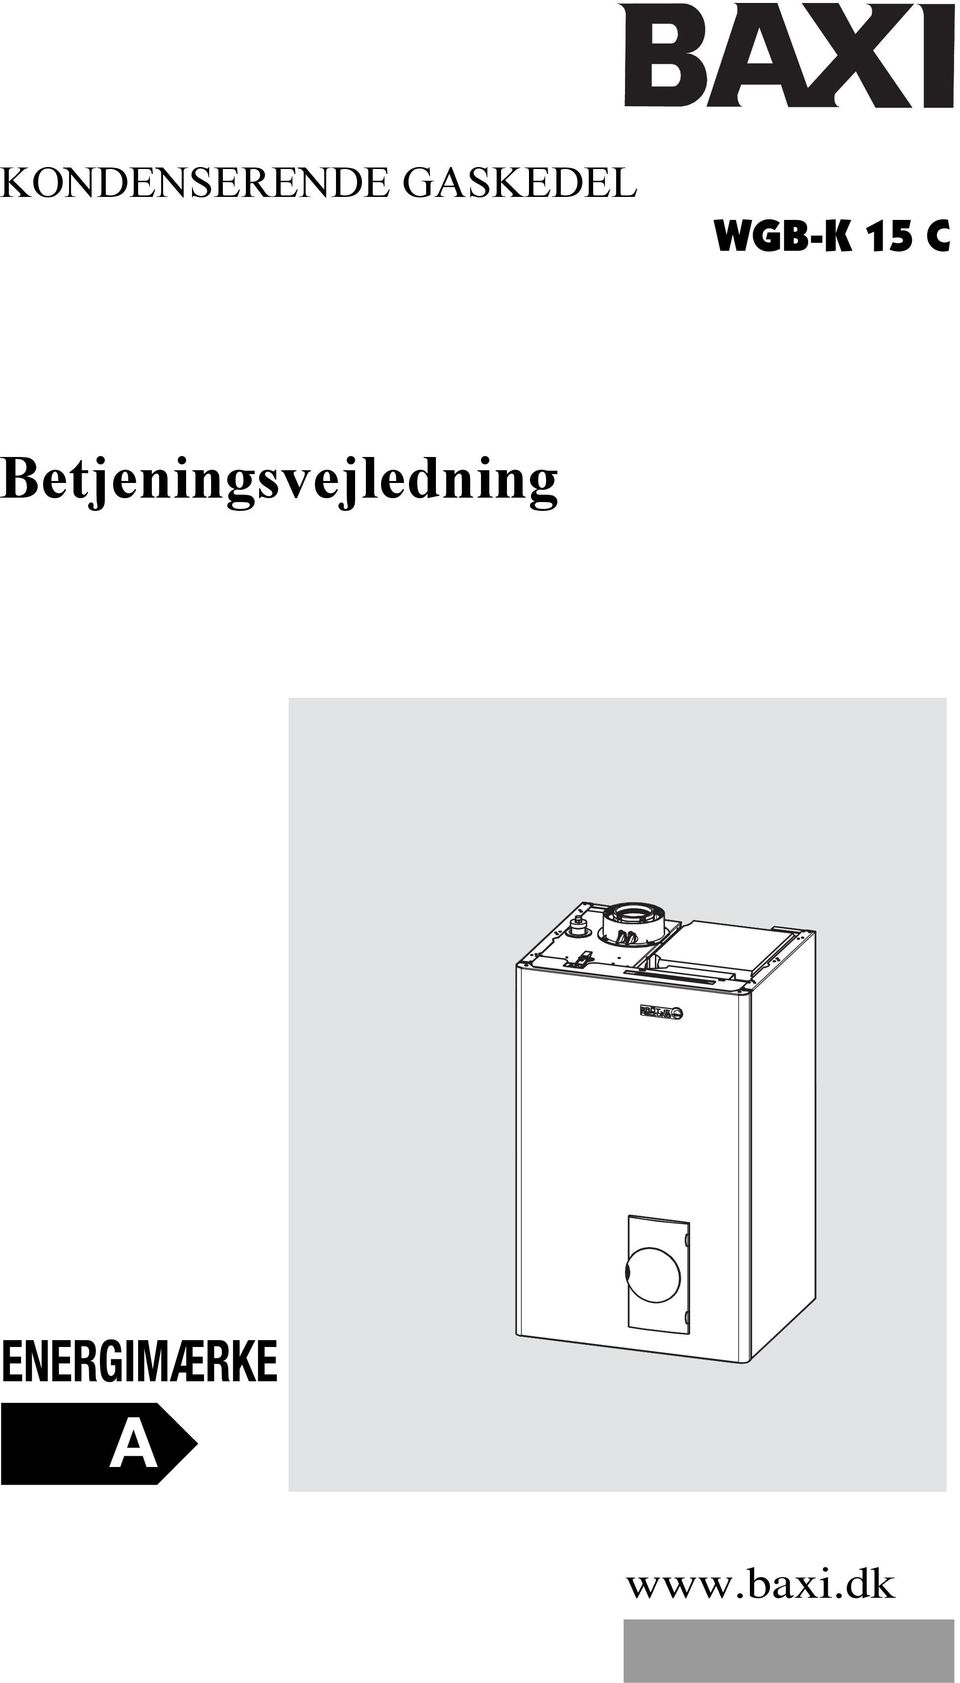 KONDENSERENDE GASKEDEL WGB-K 15 C. Betjeningsvejledning ENERGIMÆRKE. - PDF  Free Download